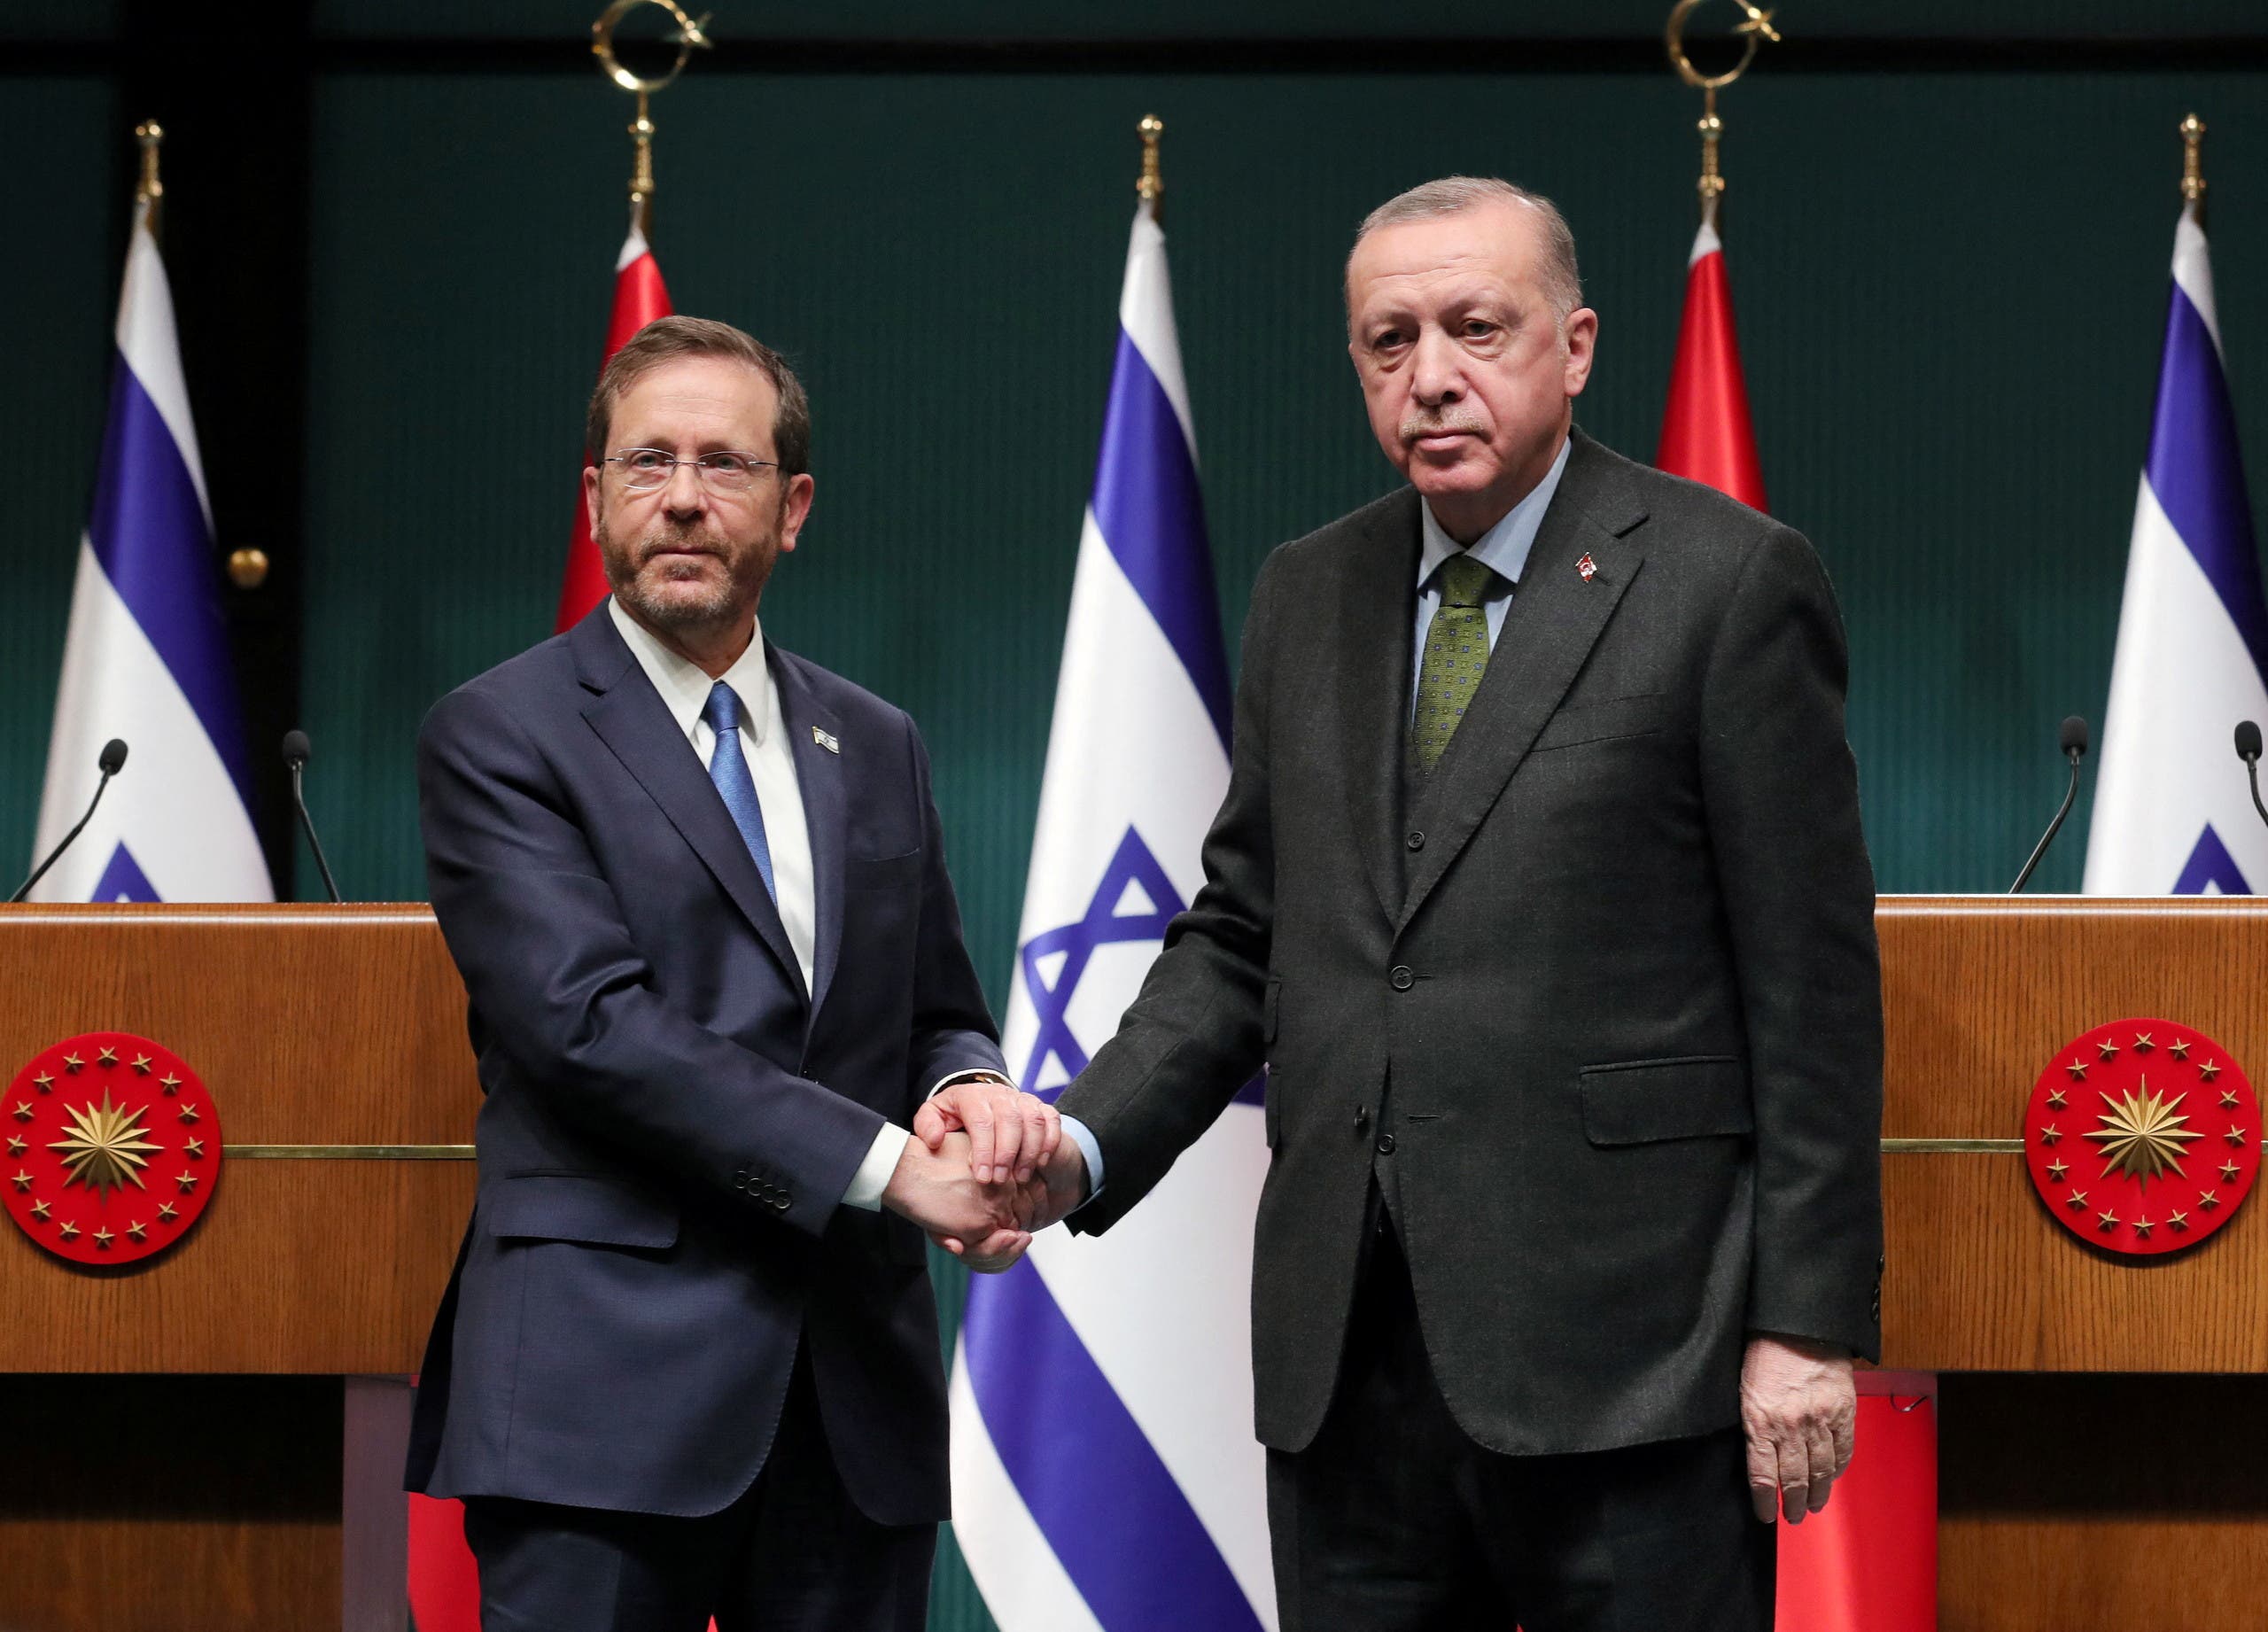 الرئيس الإسرائيلي إسحاق هرتسوغ مع الرئيس التركي رجب طيب أردوغان في أنقرة، الأربعاء